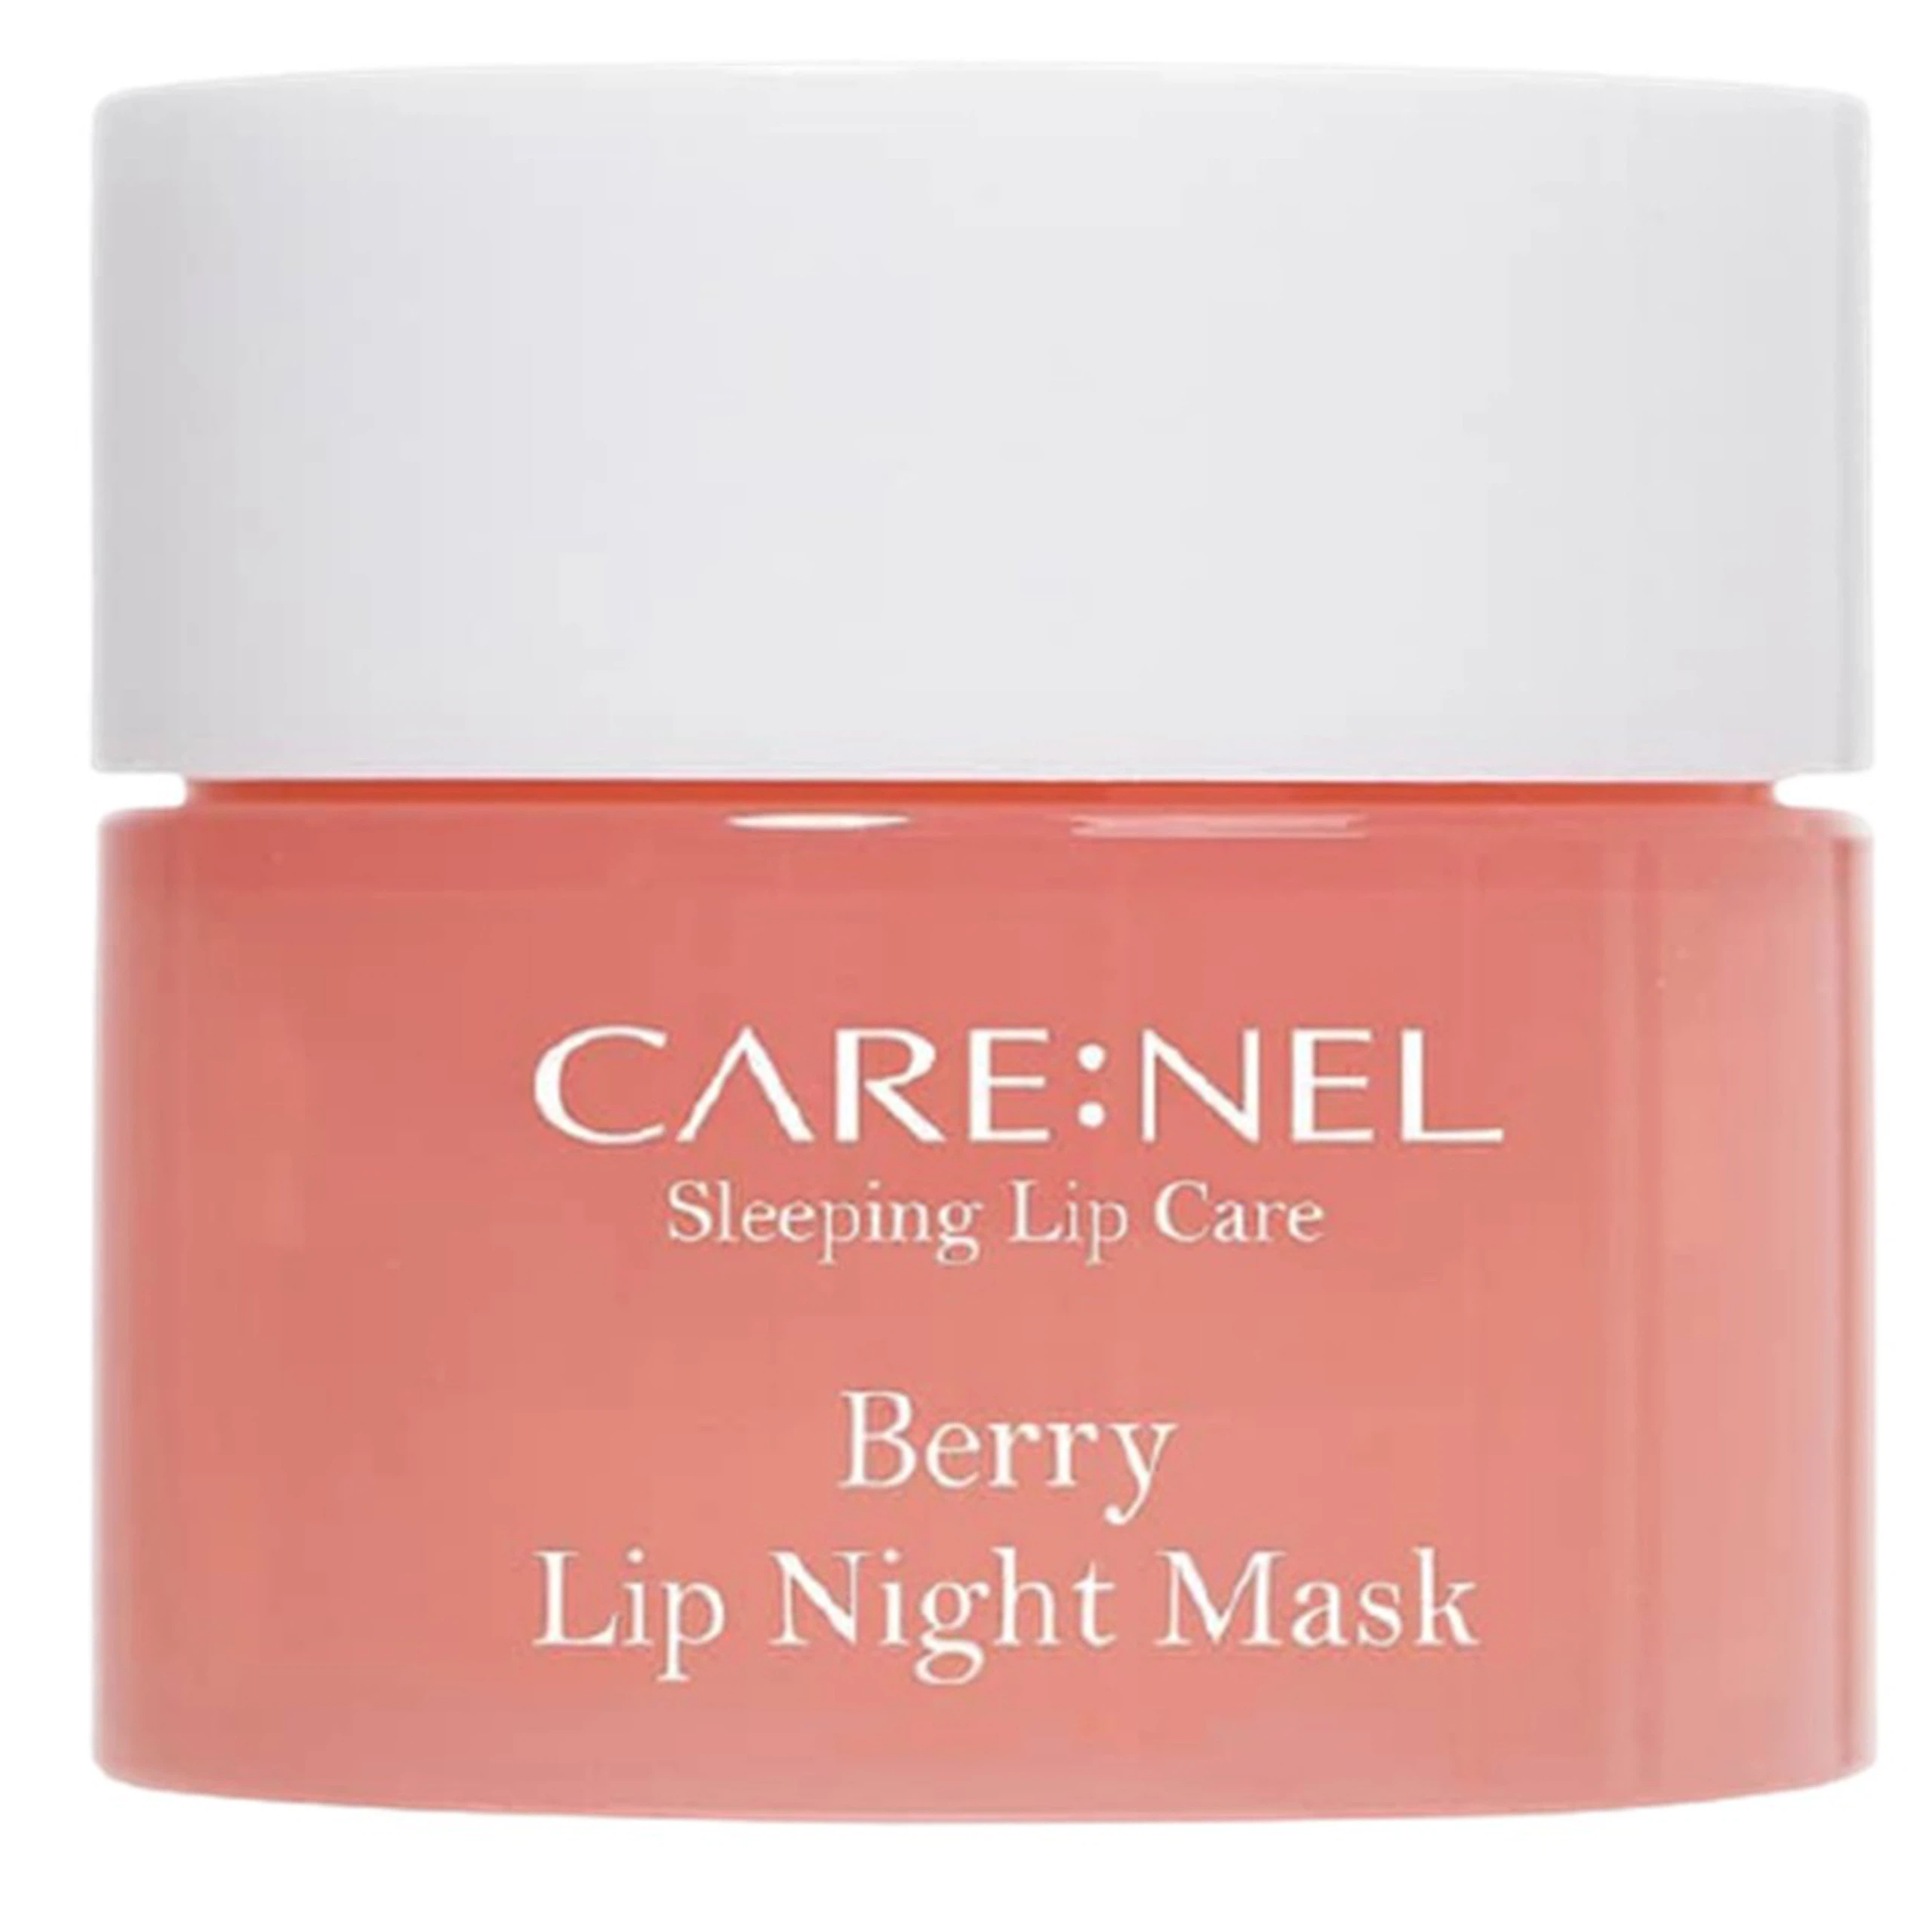 Mặt nạ ngủ môi Care:Nel Berry Lip Night Mask dưỡng ẩm, ngừa thâm dành cho môi phun xăm, nhạy cảm, môi trị liệu (5g)